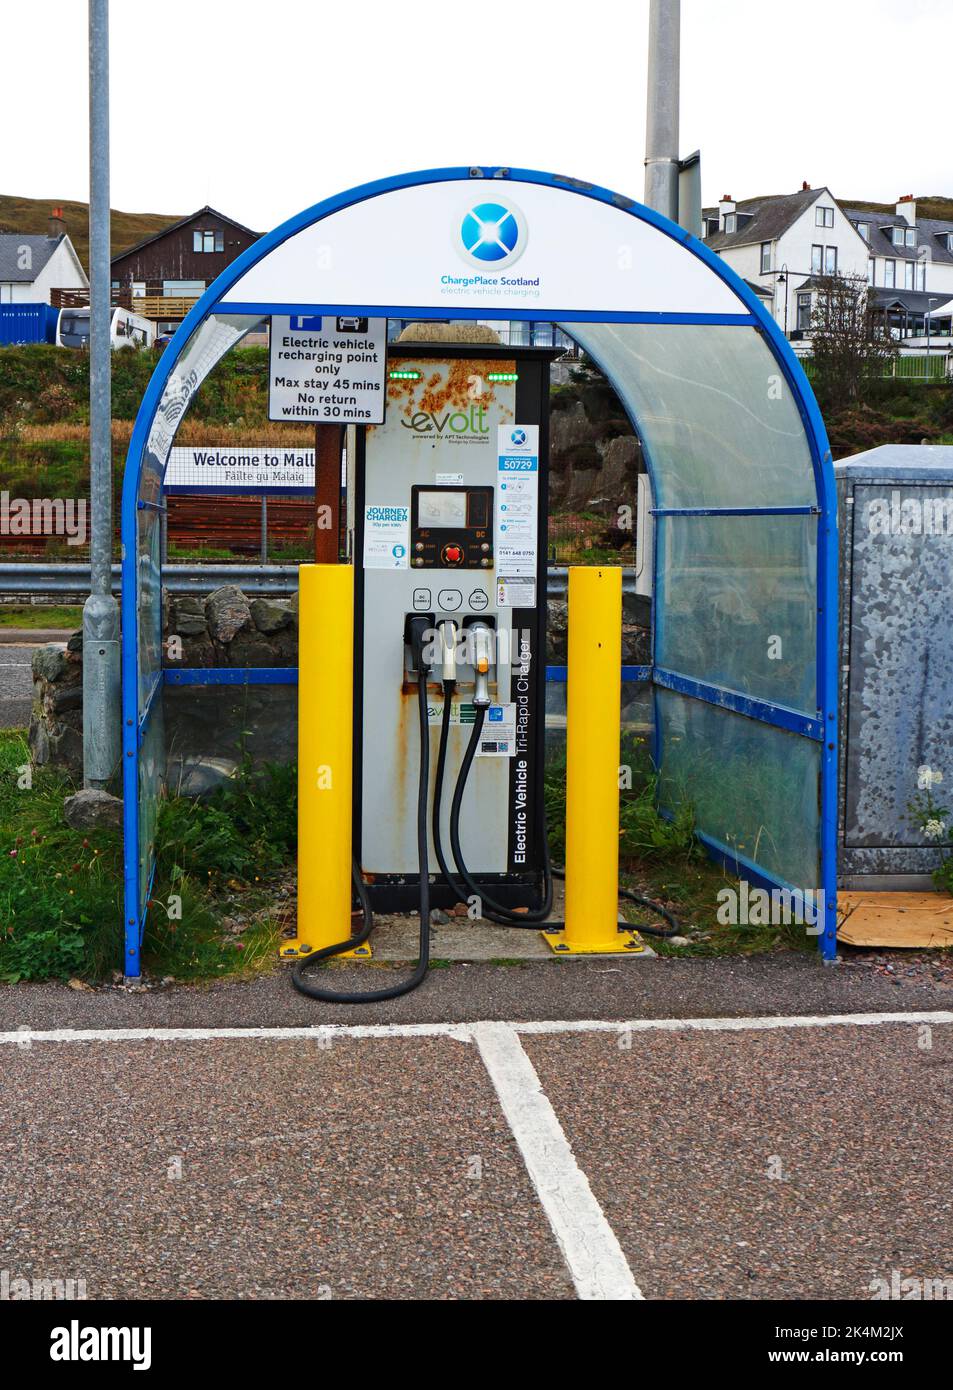 Un chargeur Tri-Rapid de véhicule électrique pour recharger les véhicules électriques sur un parking à Mallaig, Morar, Écosse, Royaume-Uni. Banque D'Images